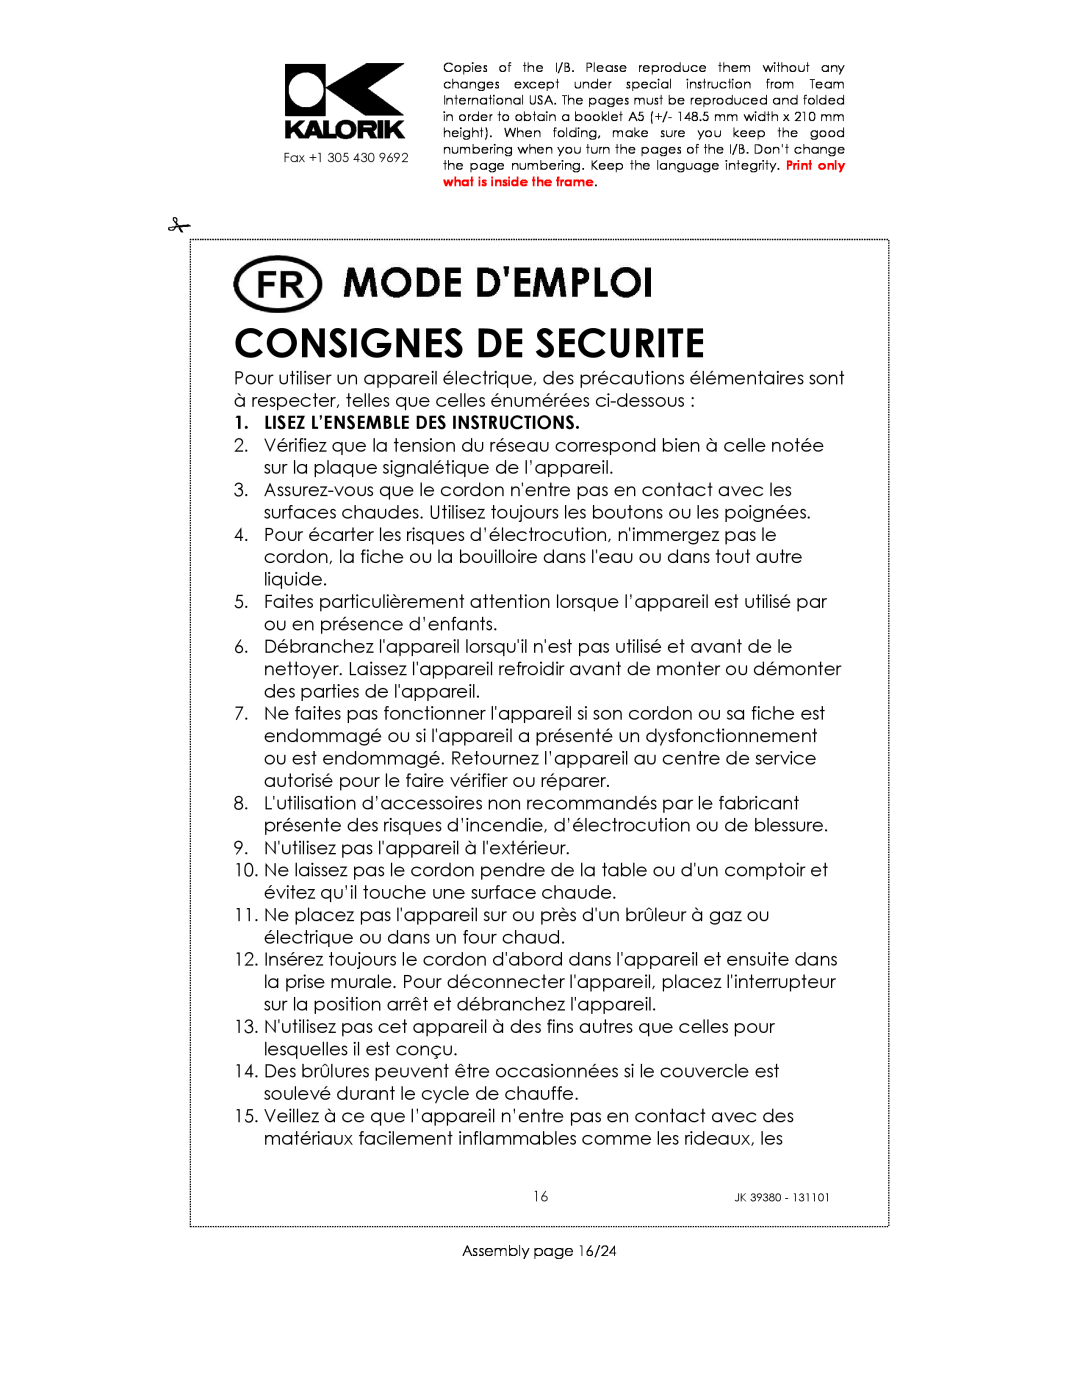 Kalorik JK 39380 manual Consignes De Securite, Lisez L’Ensemble Des Instructions 